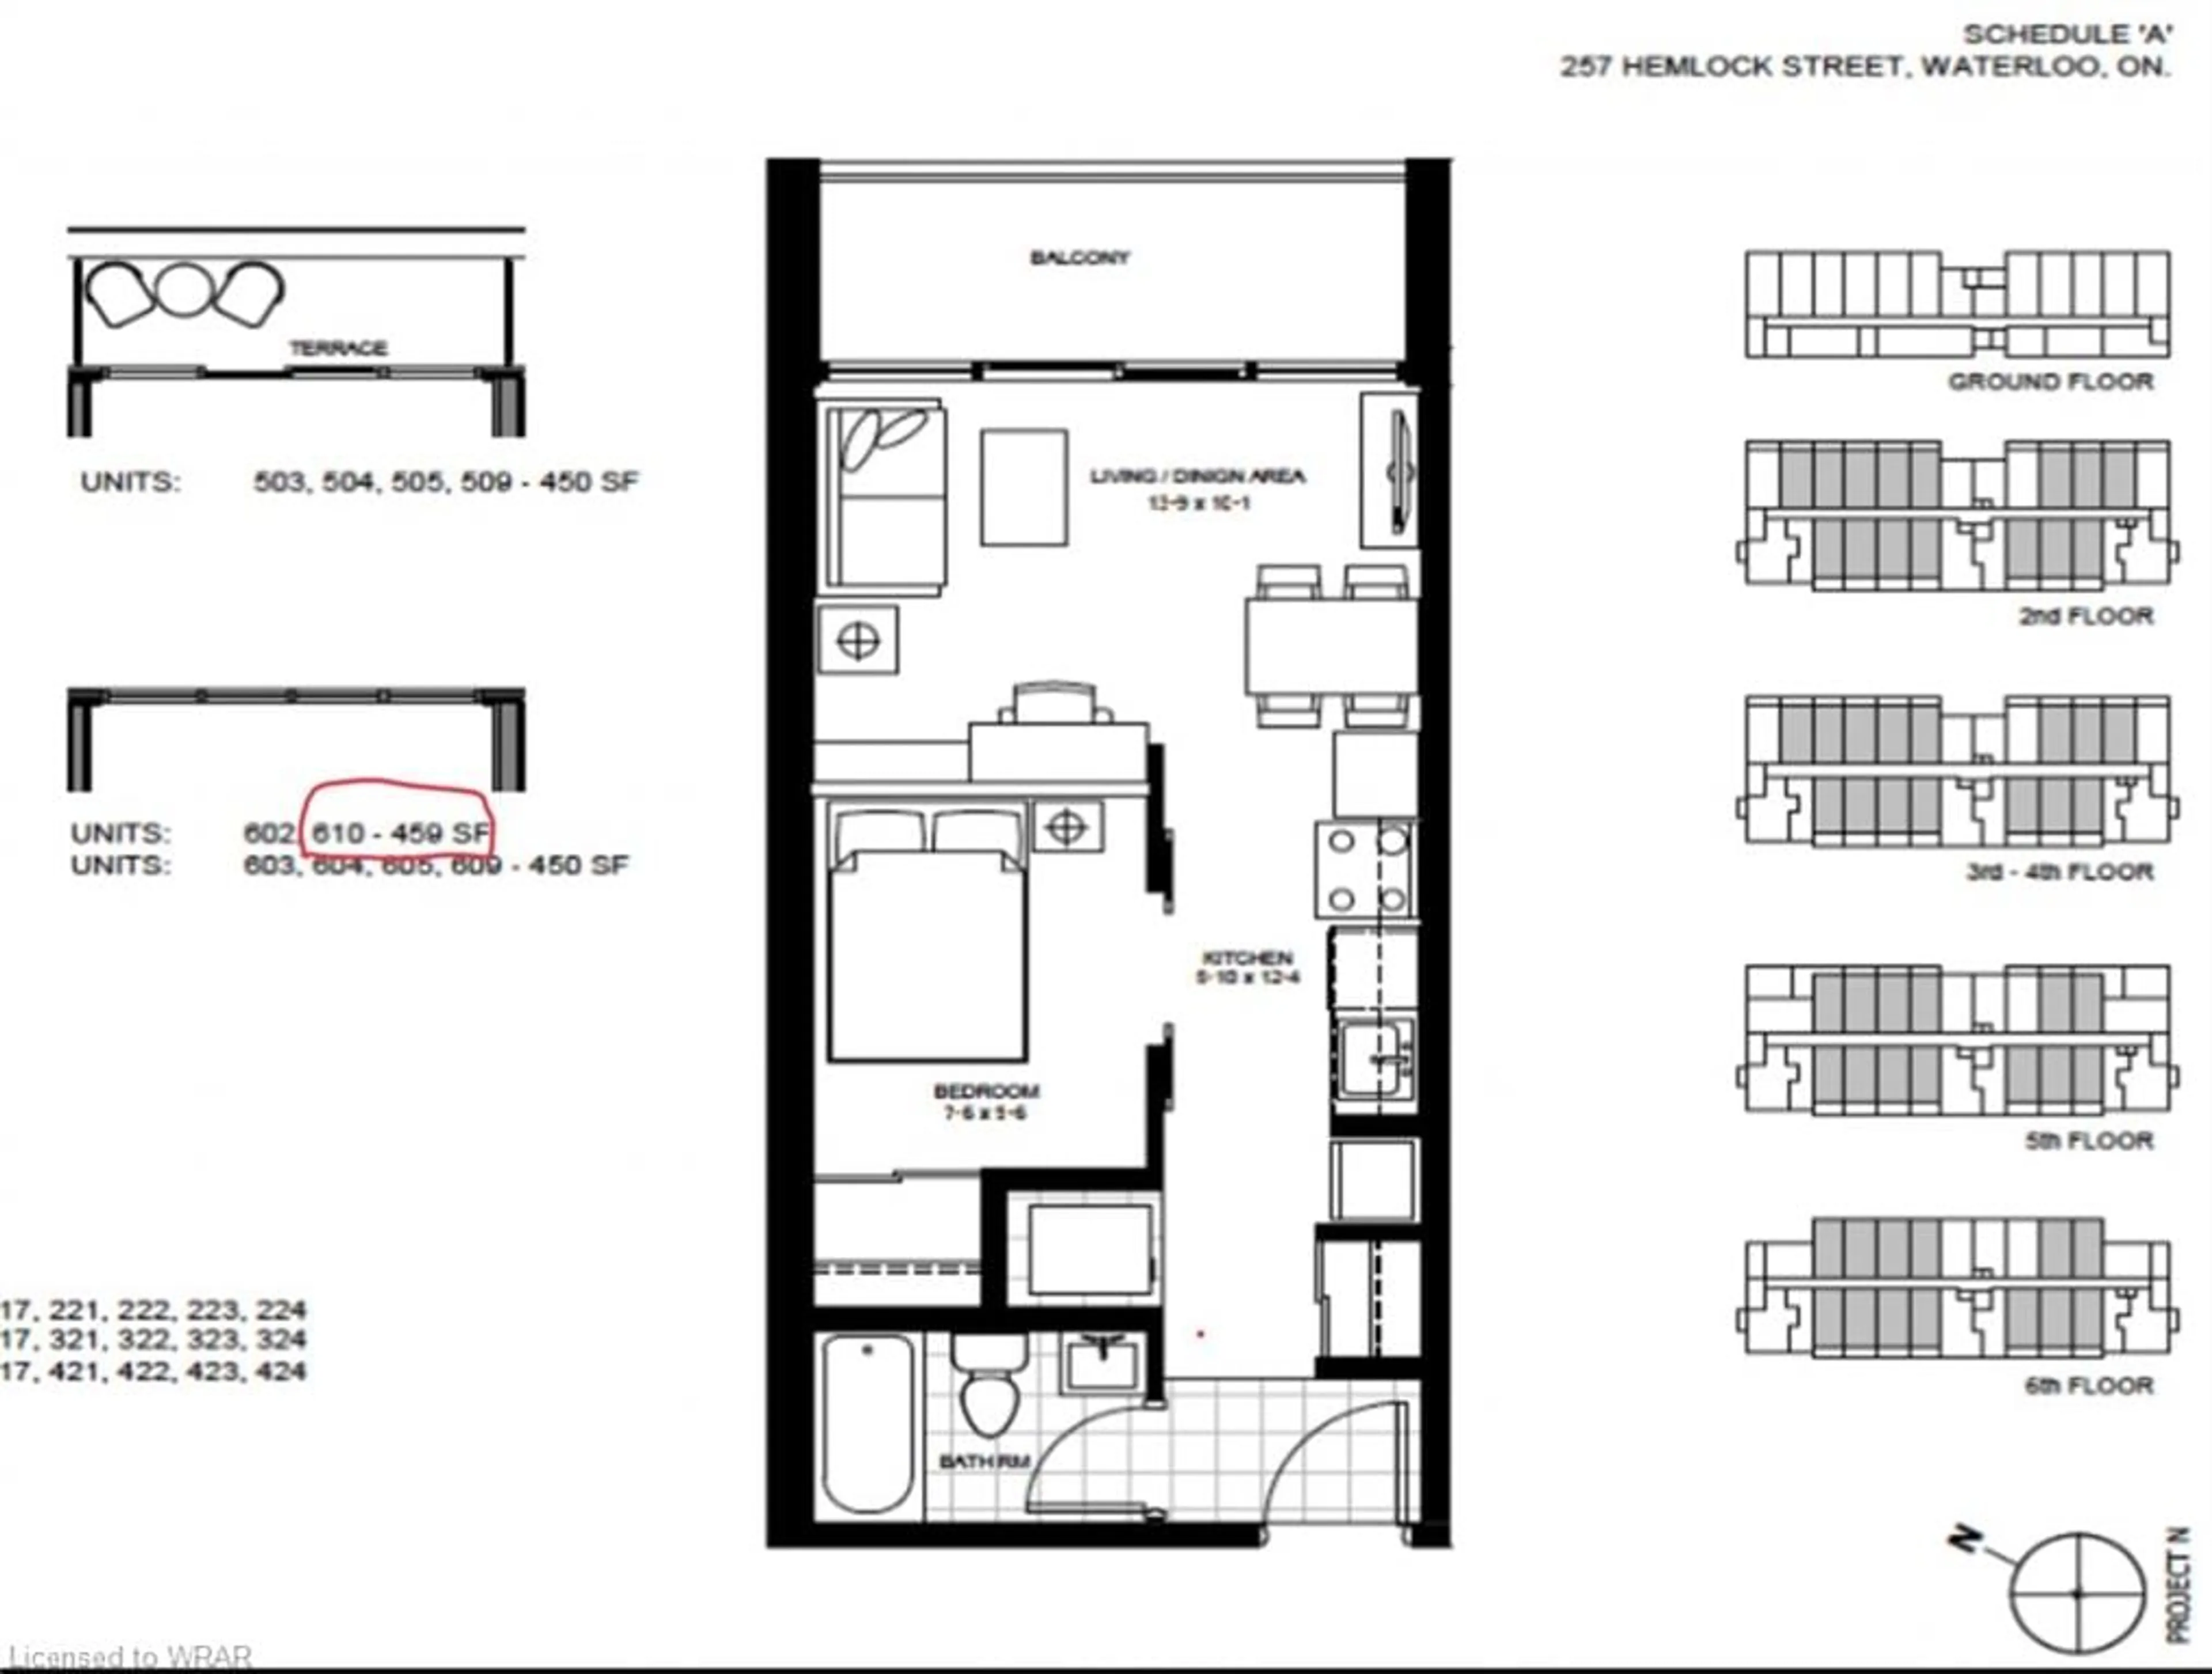 Floor plan for 257 Hemlock Street St #610, Waterloo Ontario N2L 3R4